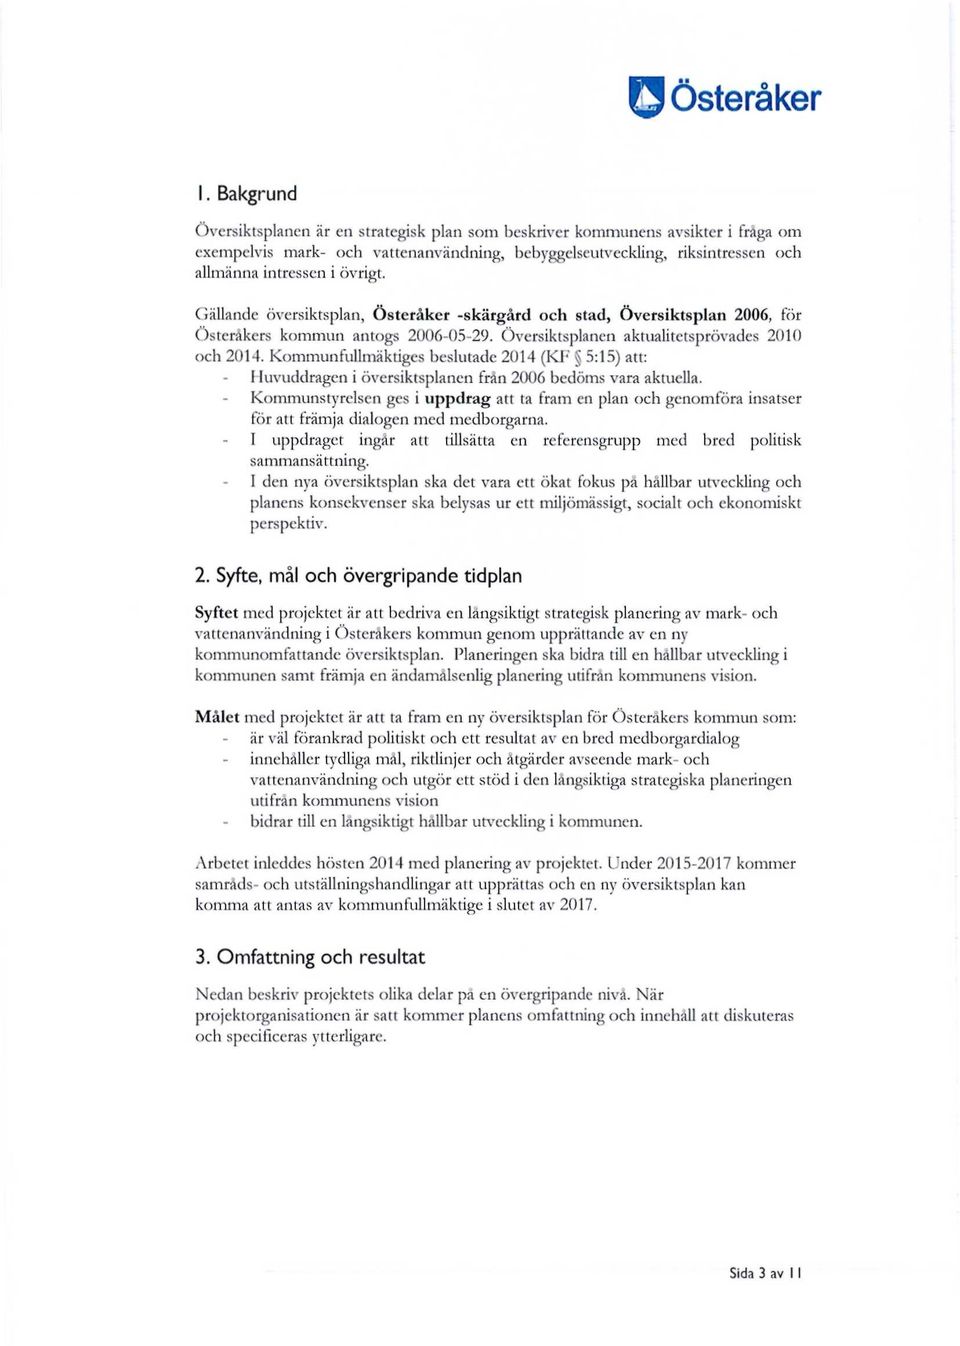 Gällande översiktsplan, Österåker -skärgård och stad, Översiktsplan 2006, för Österåkers kommun antogs 2006-05-29. Översiktsplanen aktualitetsprövades 2010 och 2014.